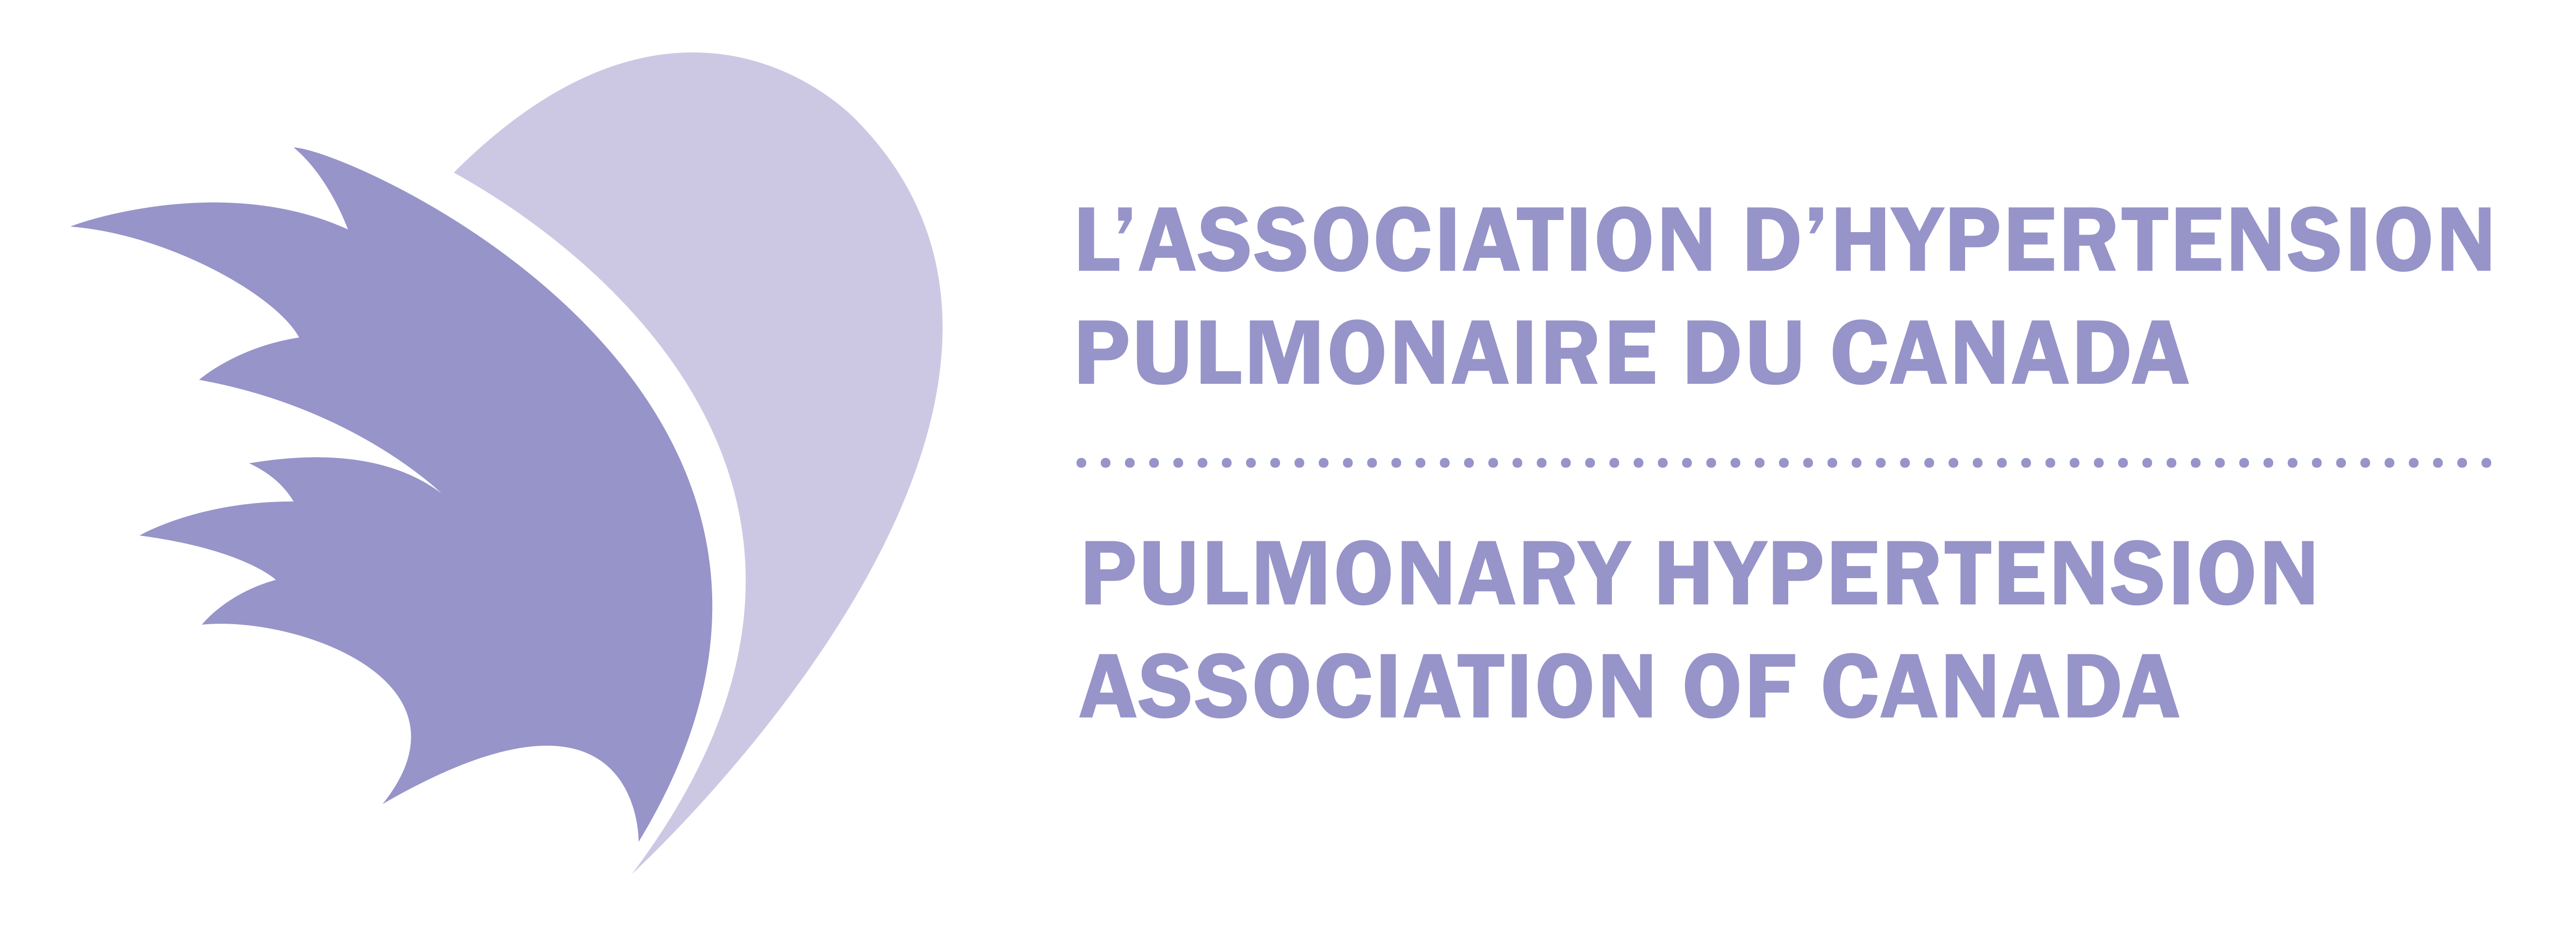 L'association d'hypertension pulmonaire du canada